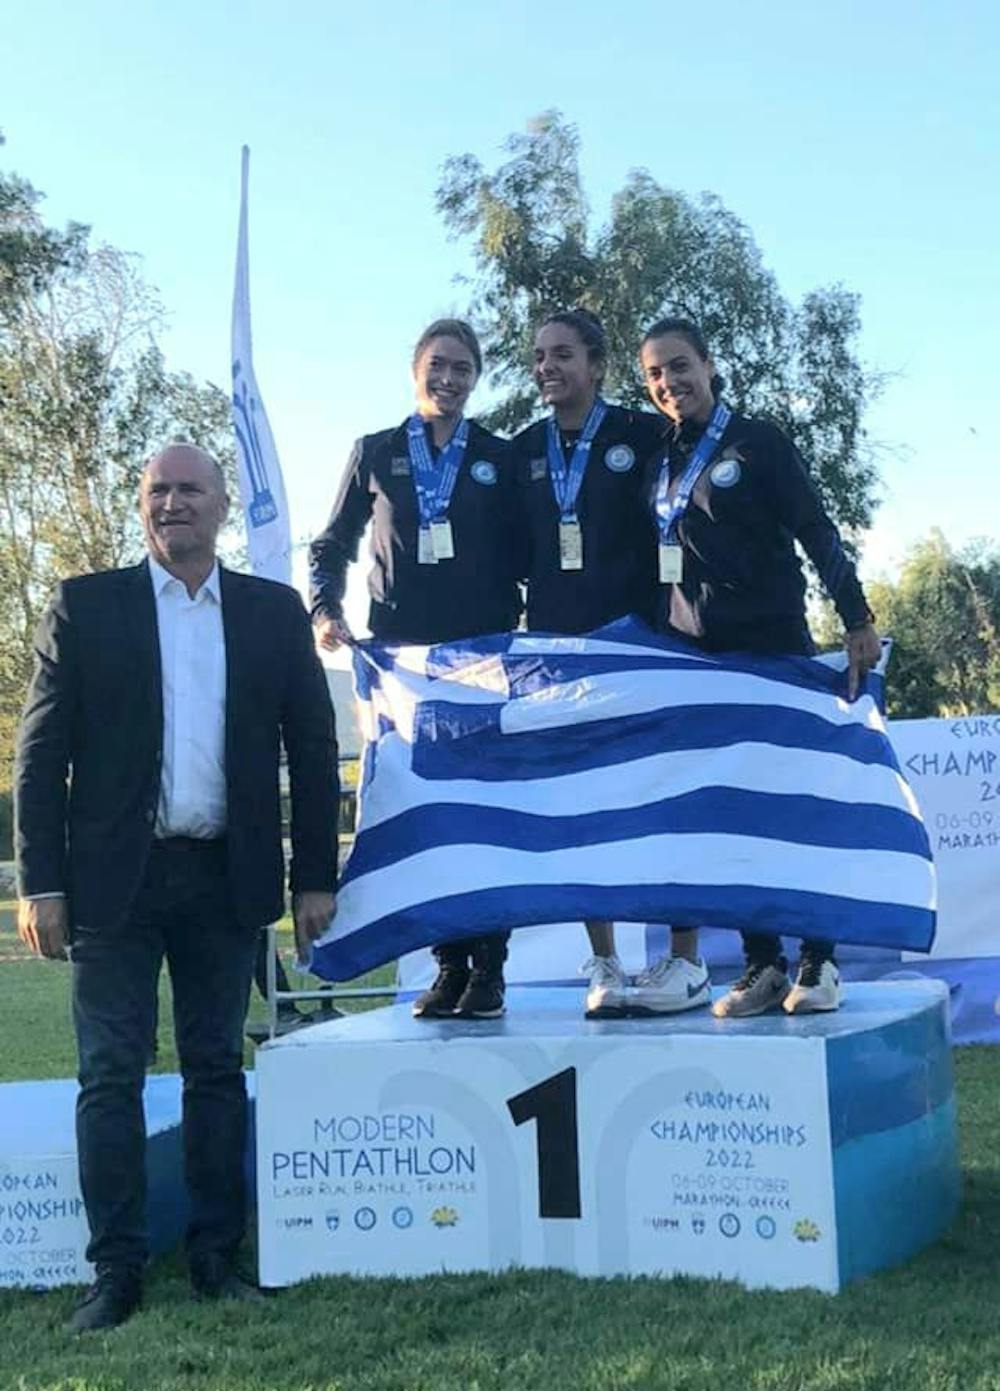 Σεχίδης, Νίκα και Πατσούρα πρωταθλητές Ευρώπης στο Laser Run!   runbeat.gr 